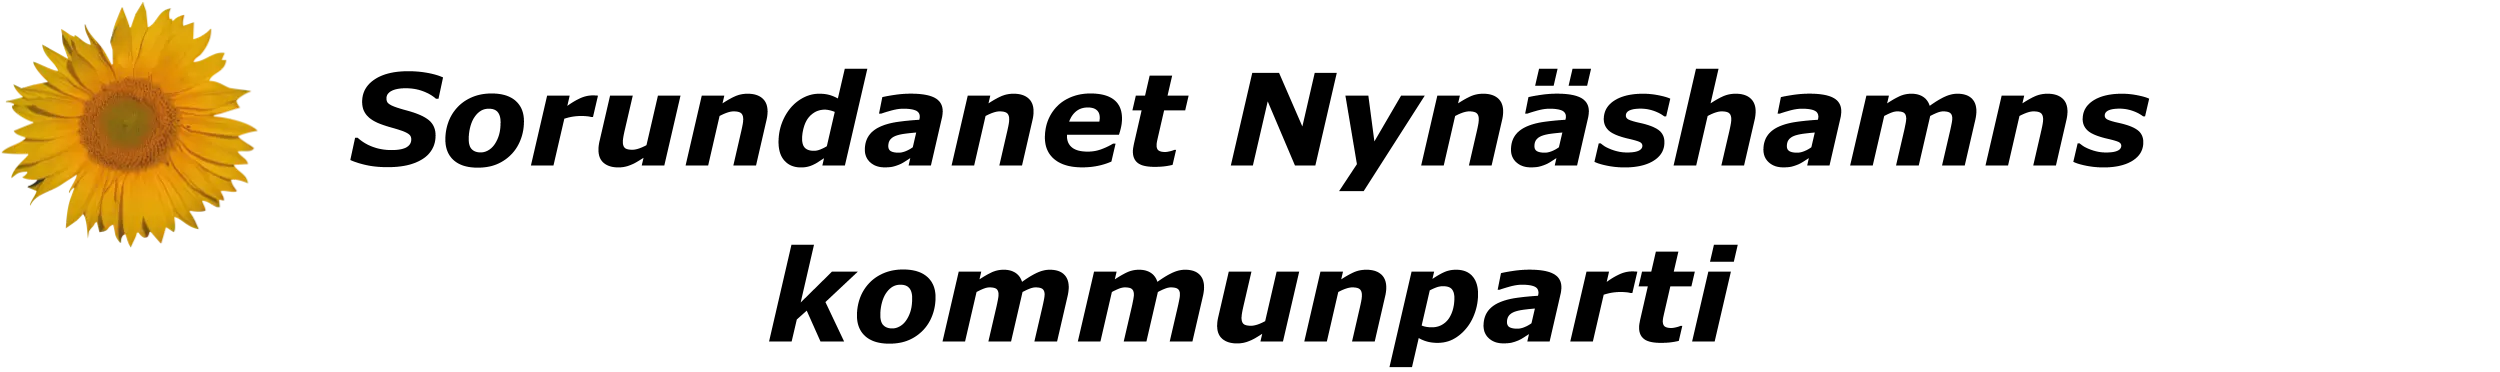 Sorundanet symbol logotyp till valsedel 2018